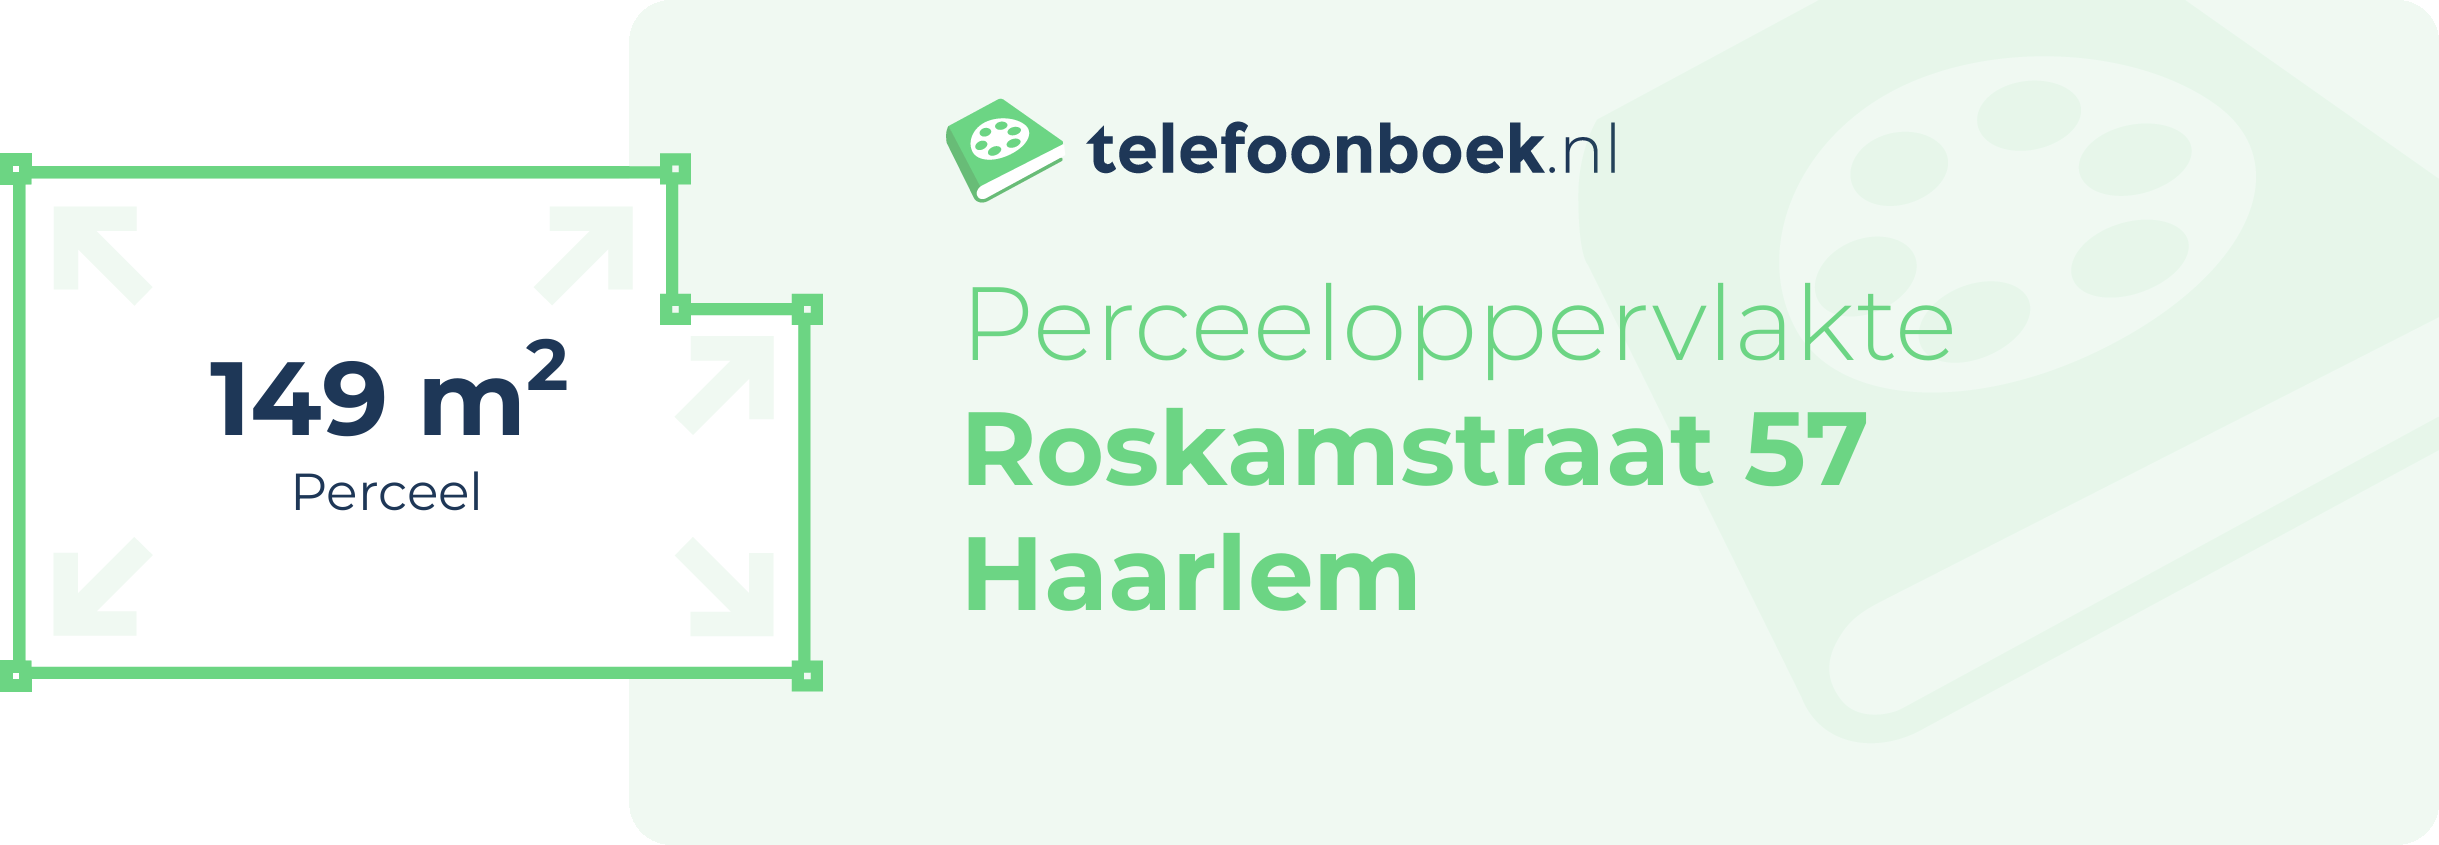 Perceeloppervlakte Roskamstraat 57 Haarlem